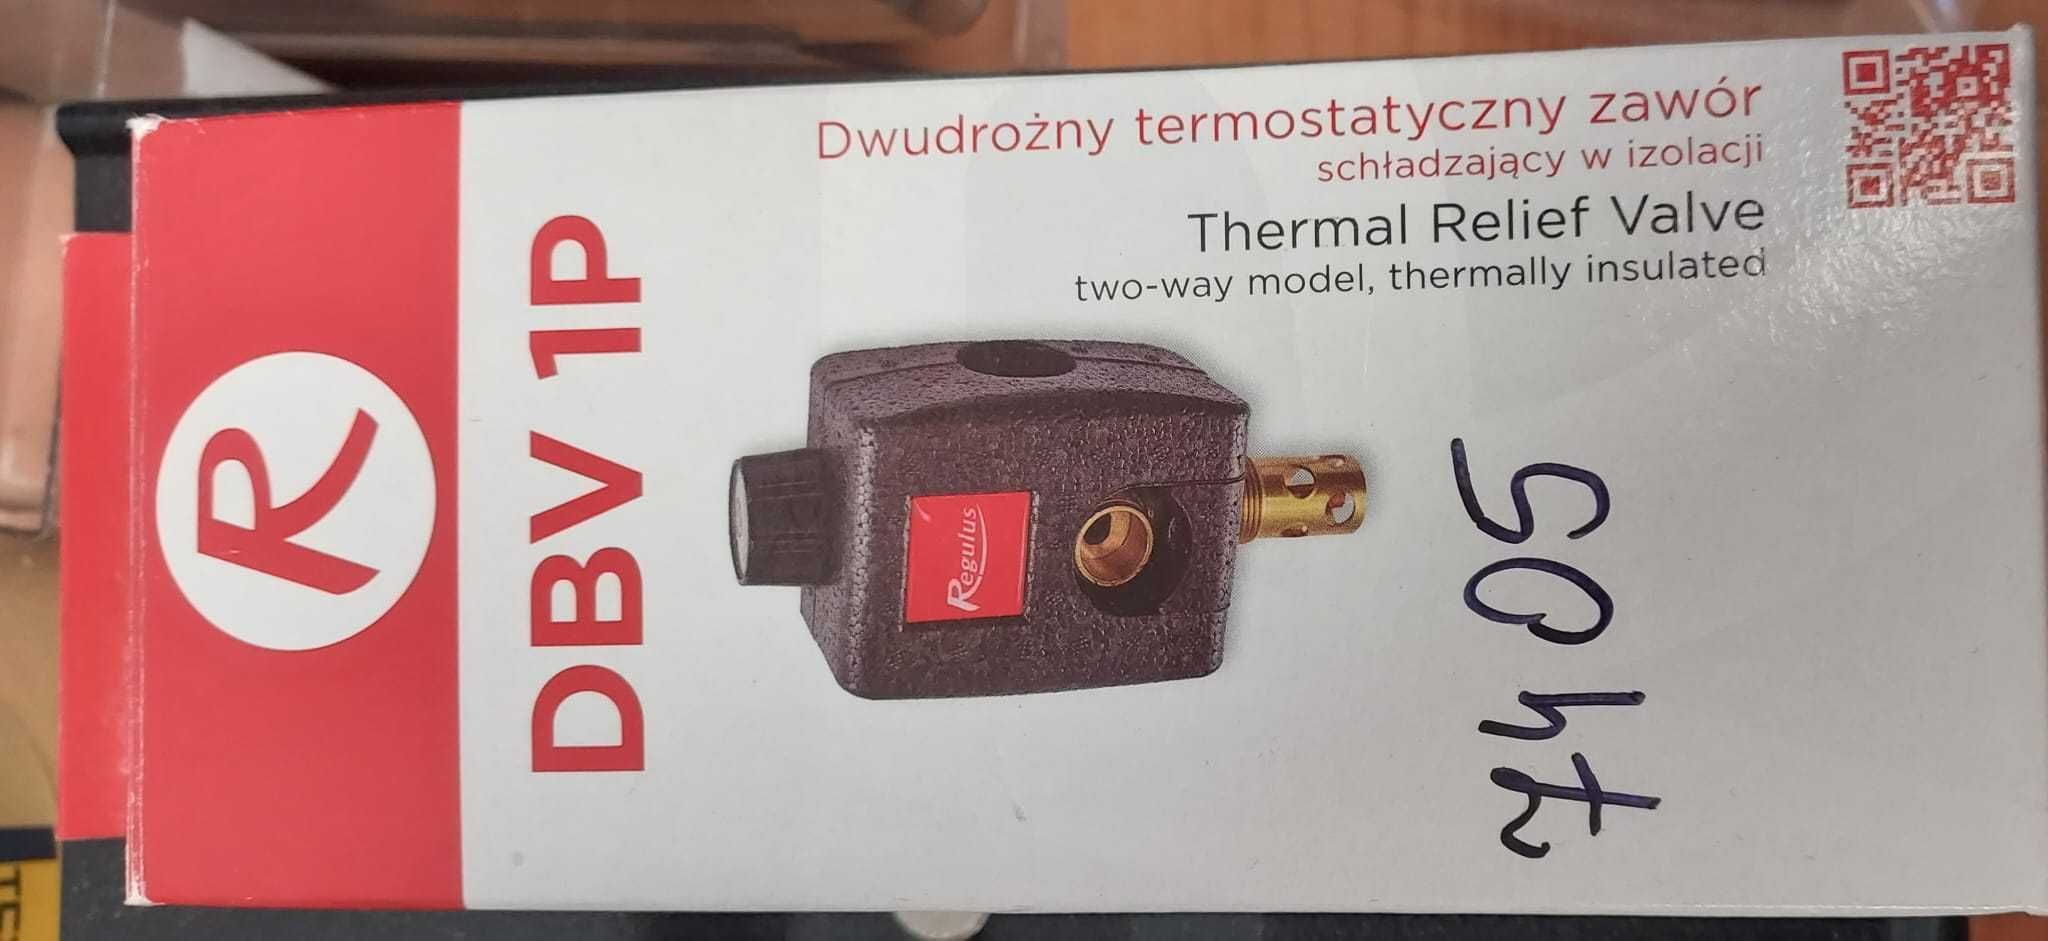 Dwudrożny termostatyczny zawór schładzający w izolacji Regulus DBV 1P